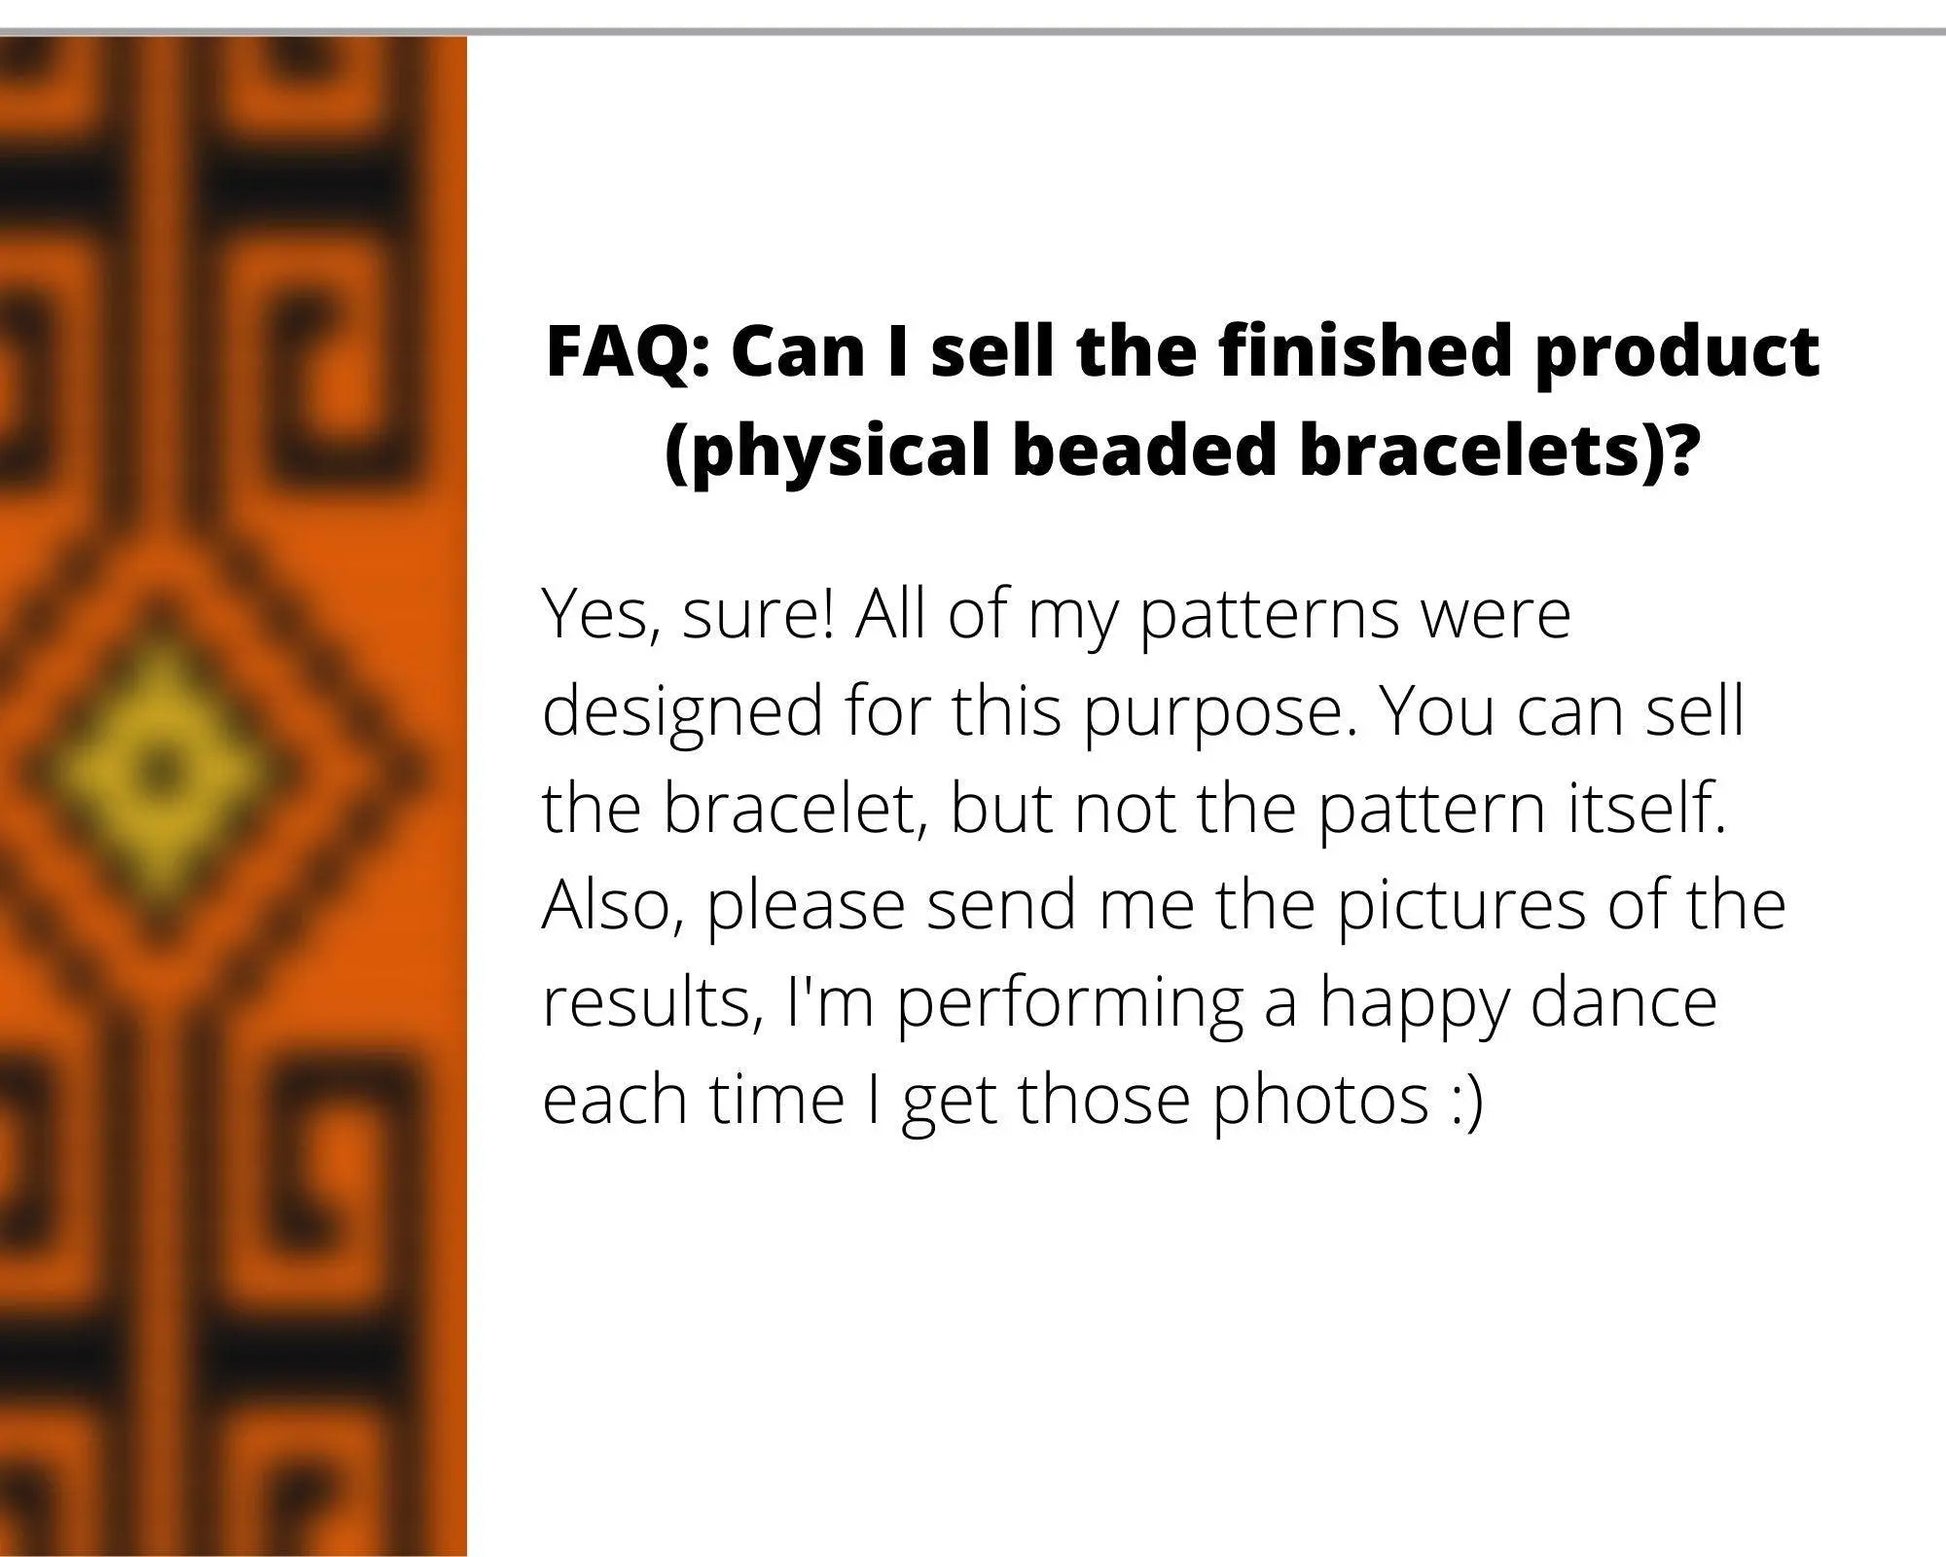 Greek Loom pattern for beaded bracelet, geometry pattern, DIY beaded bracelet pattern for Miyuki Delica - NikoBeadsUA